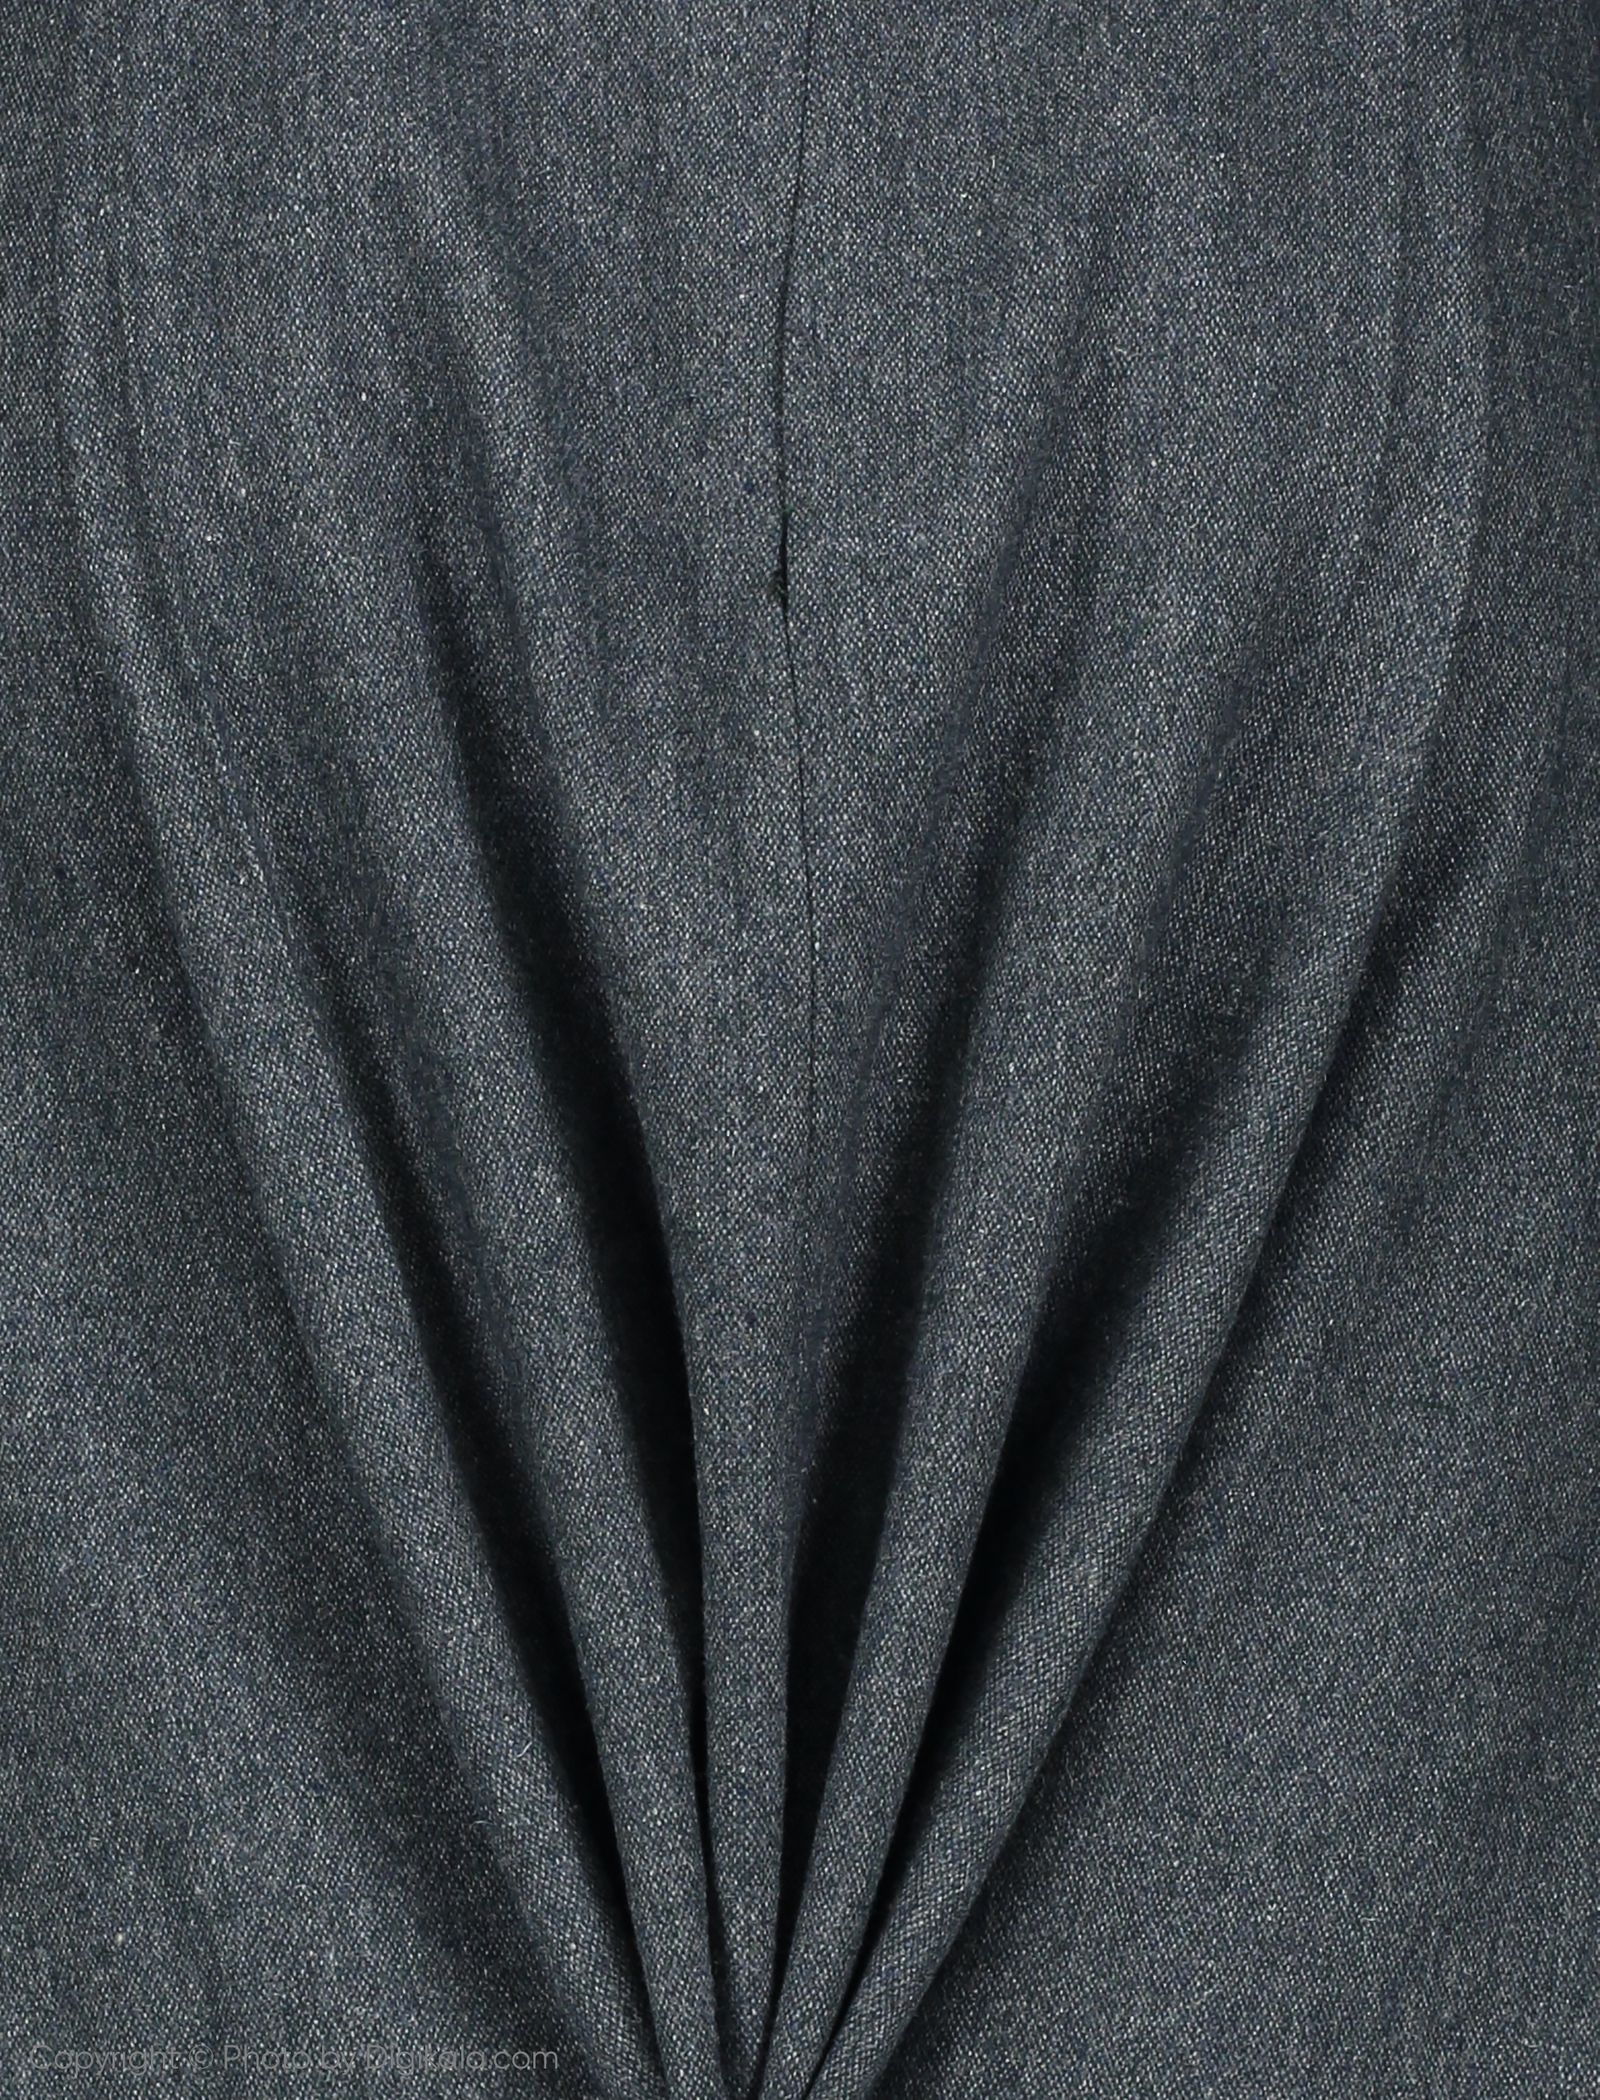 ست کت و دامن زنانه عاطفه نادری مدل 1061135-7056 - آبی زرشکی - 11